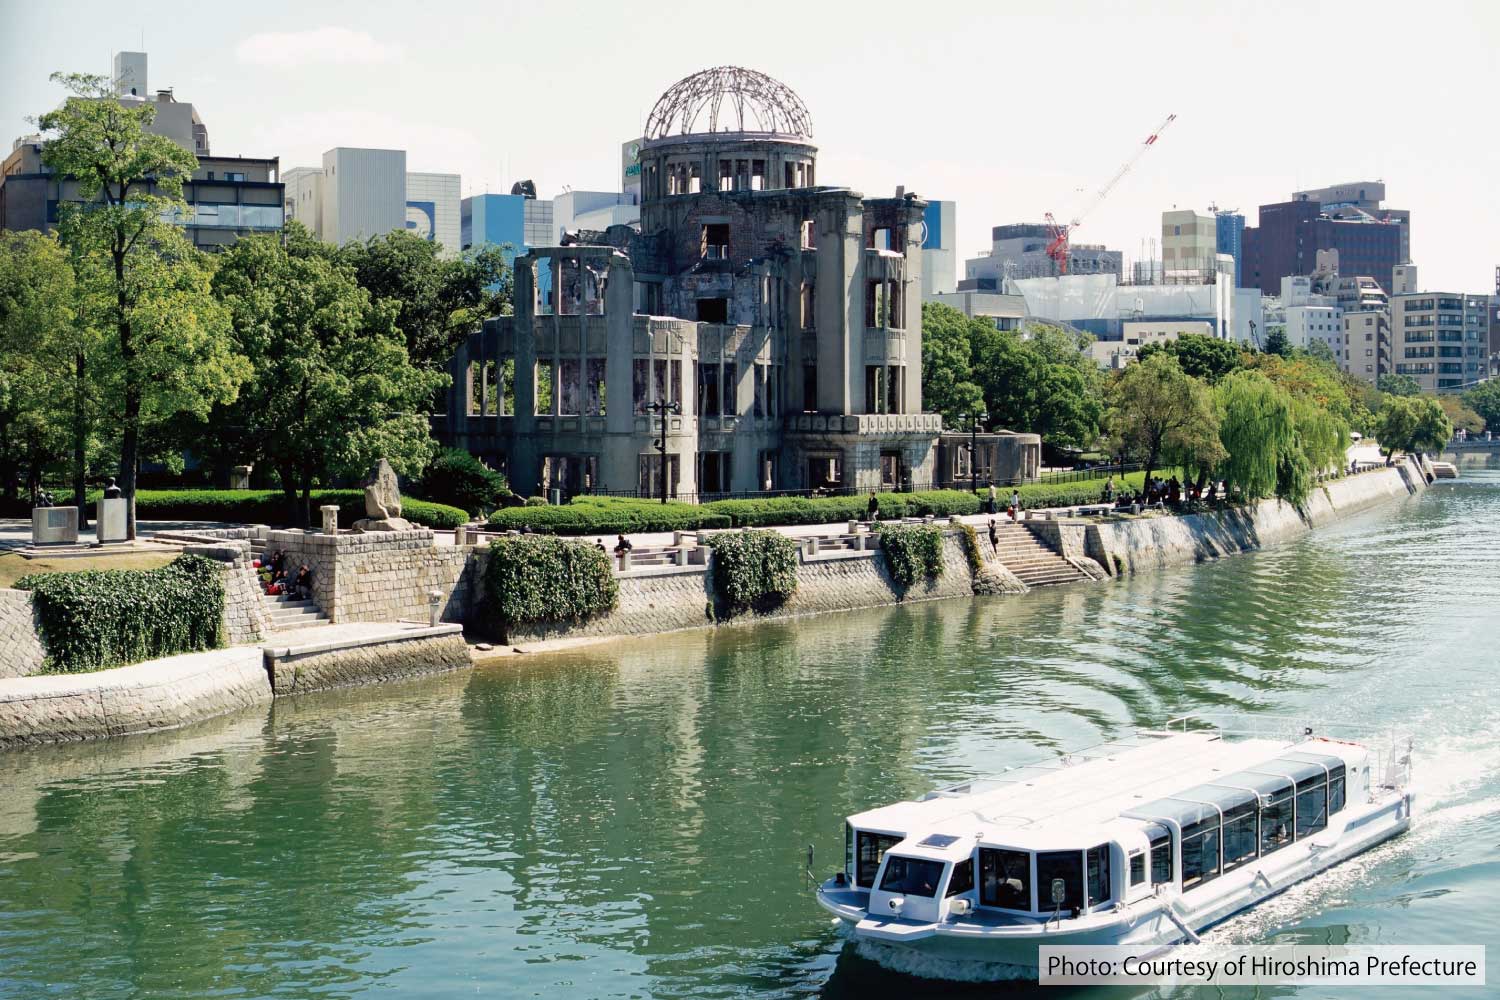 Atomic Bomb Dome (10-min walk)